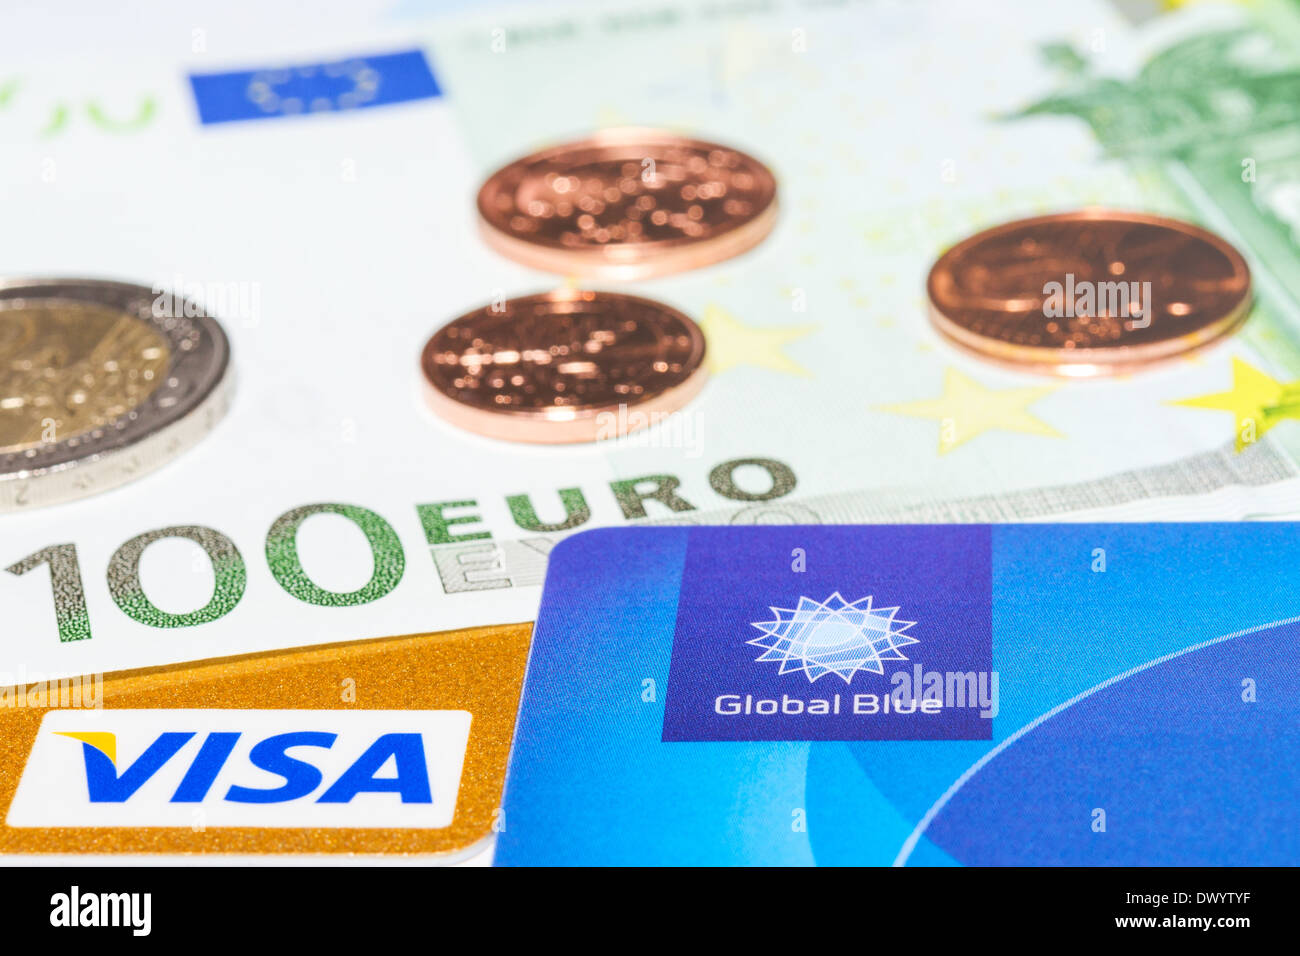 MUNICH, ALLEMAGNE - le 23 février 2014 : 'global', 'Bleu' Visa carte de crédit et l'argent comptant - votre manière de Tax Free shopping. Banque D'Images